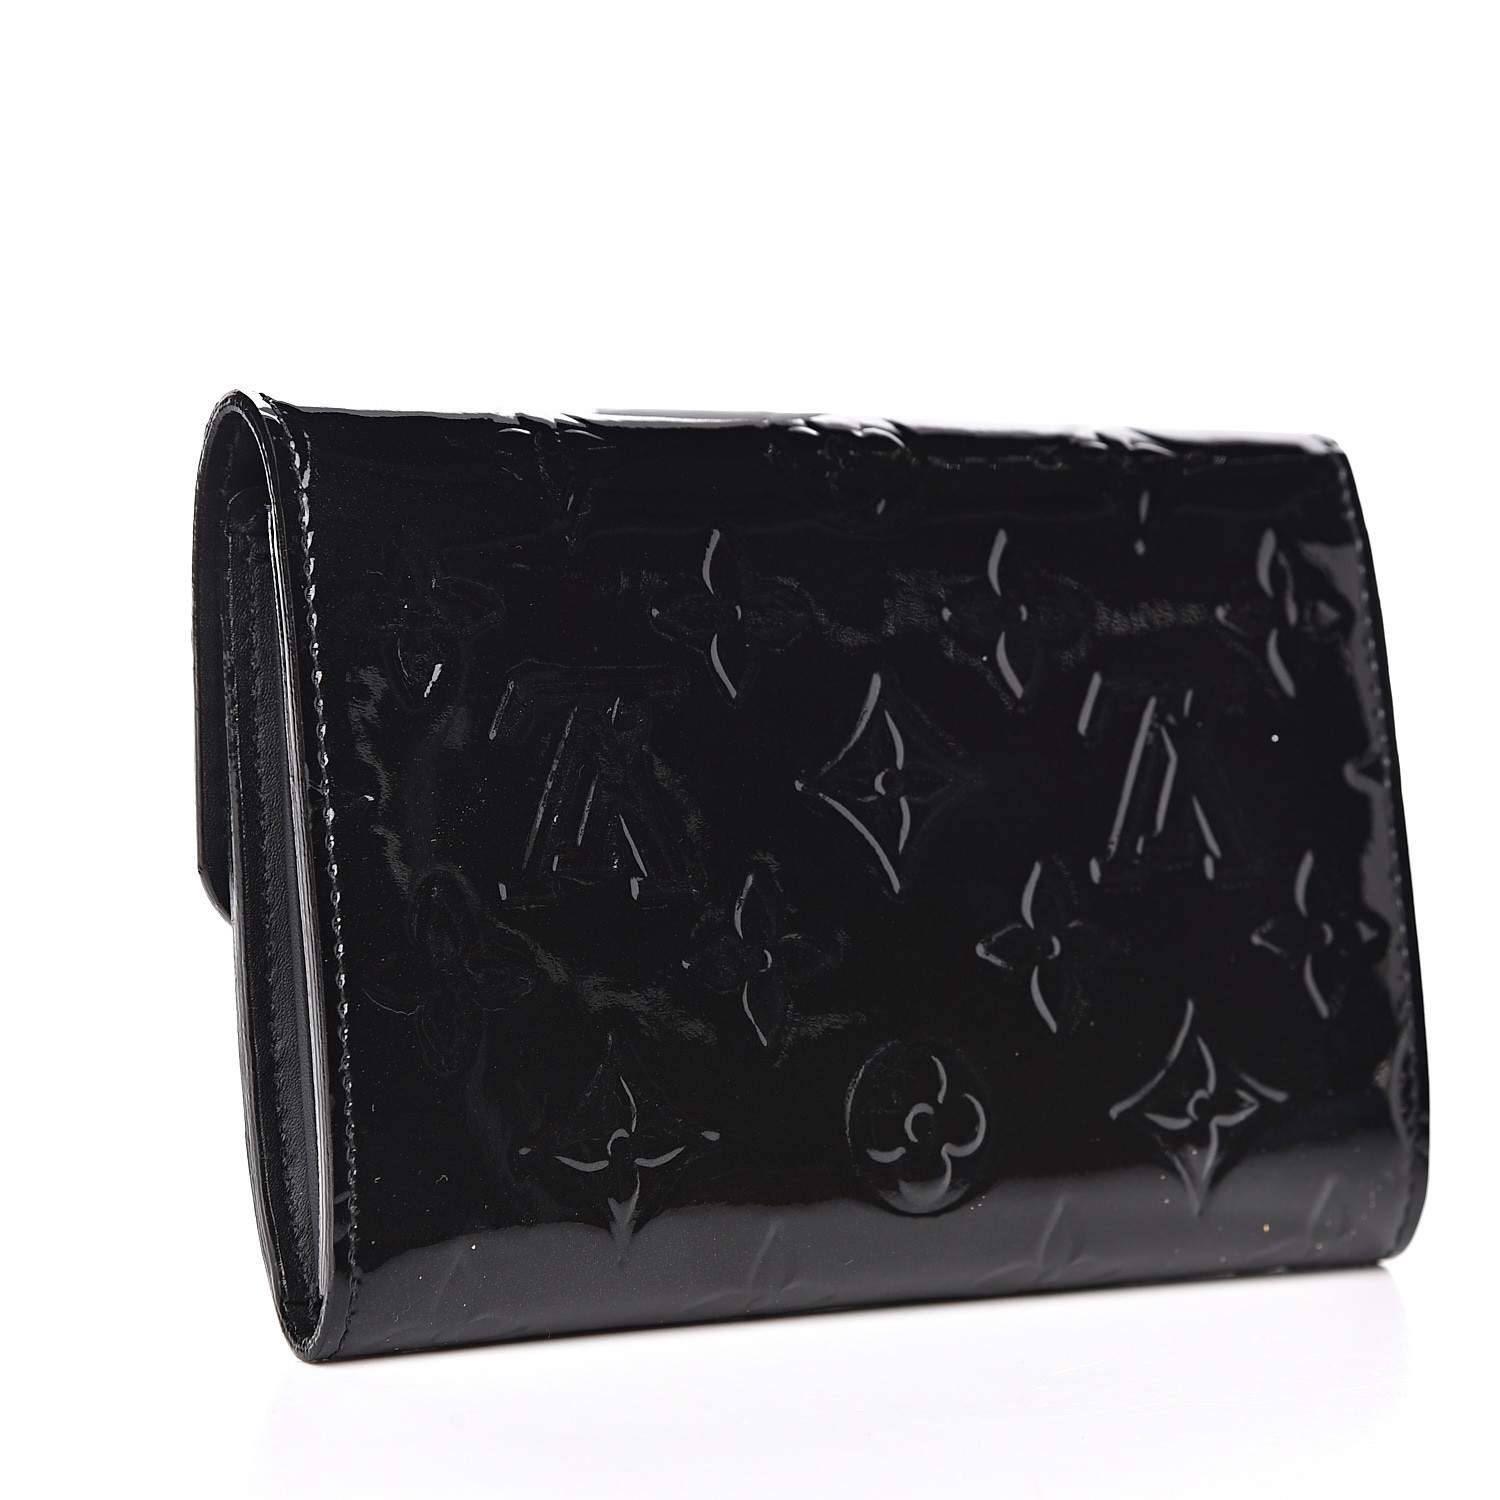 LOUIS VUITTON Vernis Sarah Compact Wallet Noir Magnetique 535556